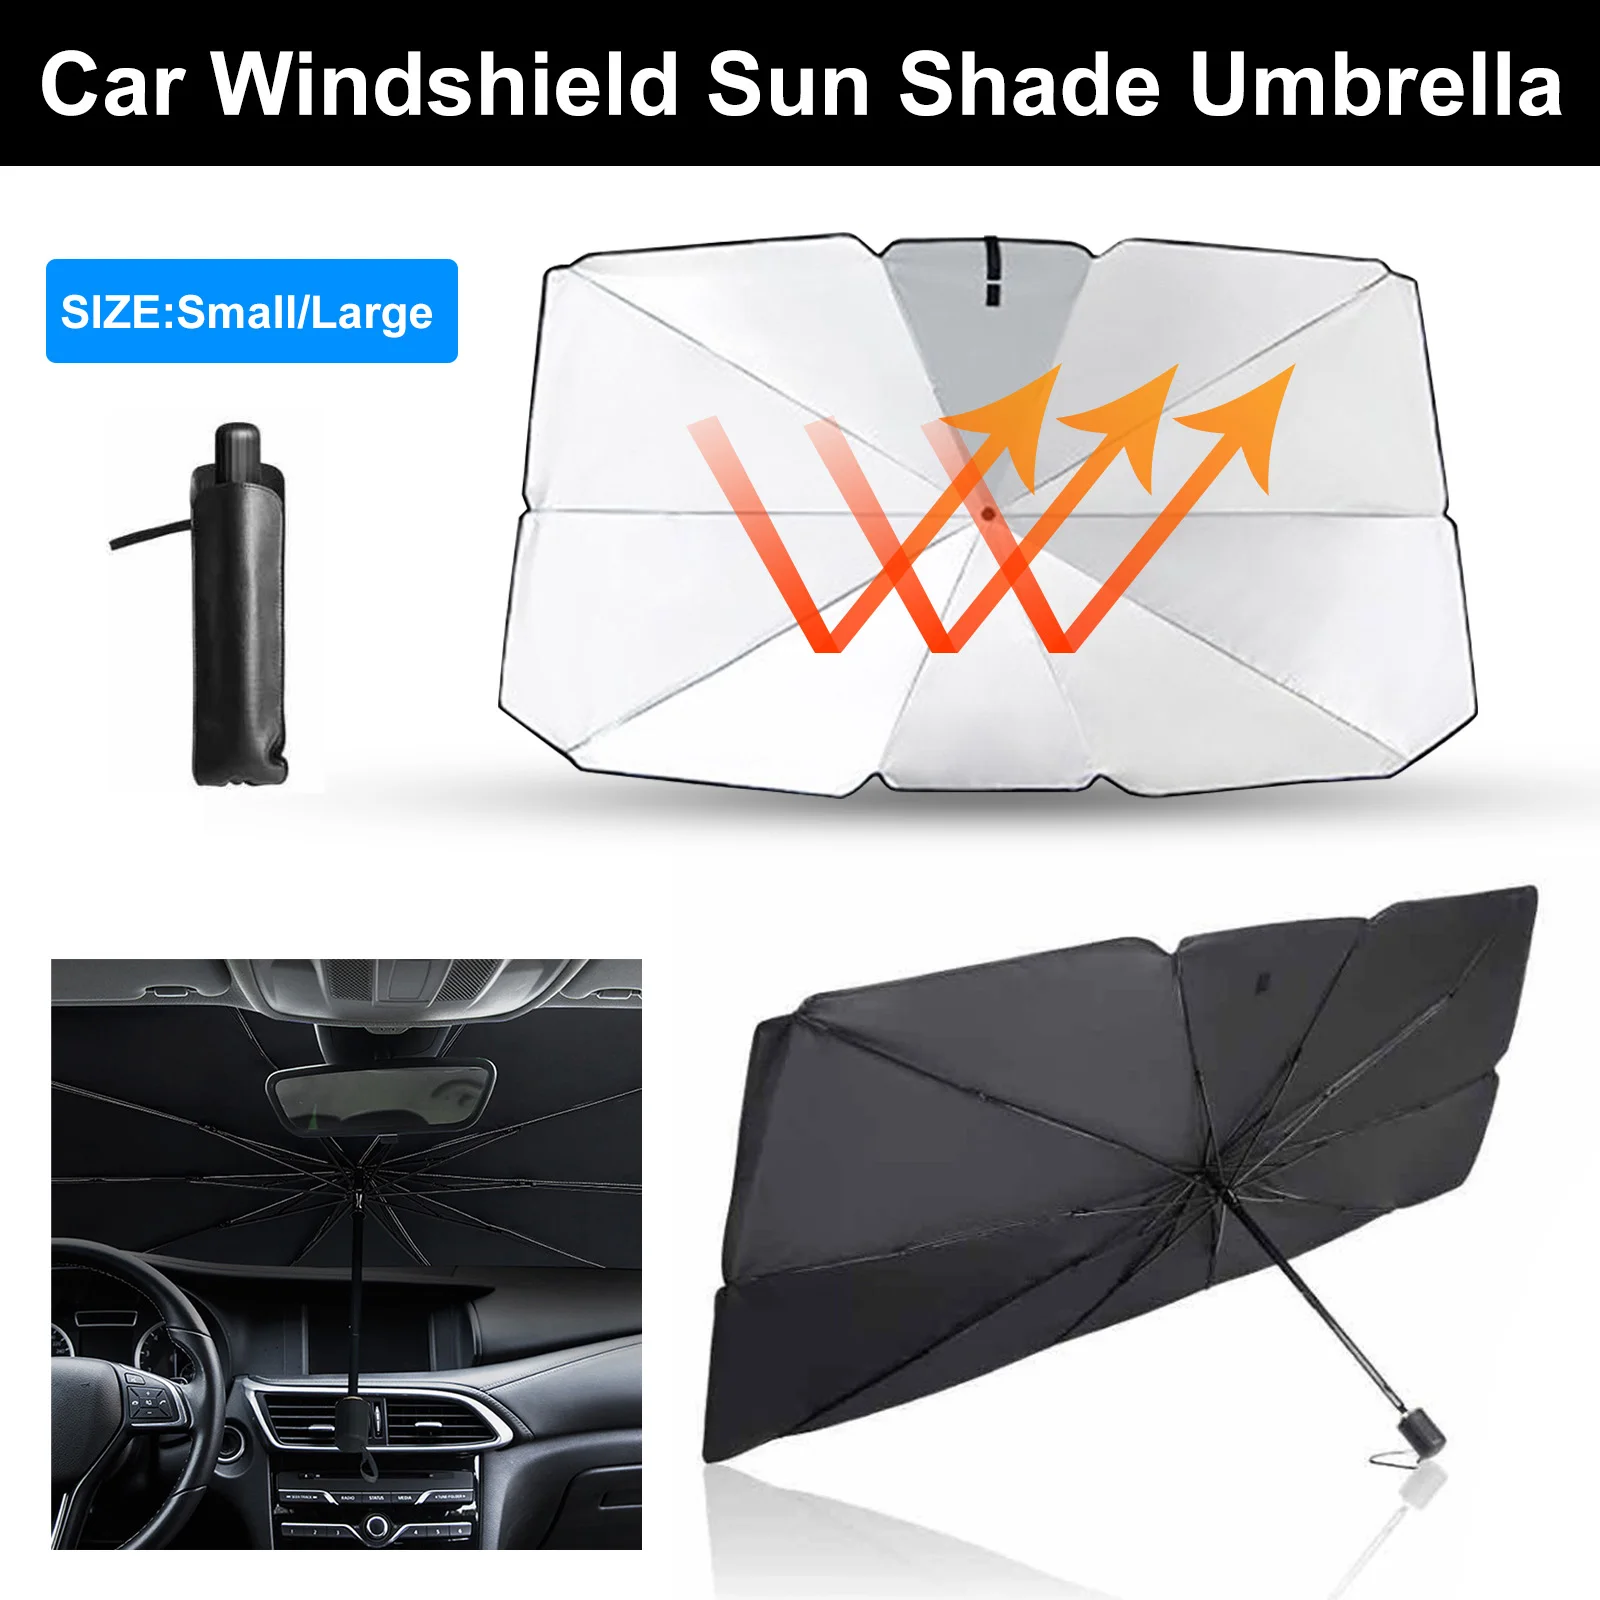 

2021 автомобильный зонт от солнца, козырек для лобового стекла внедорожника, складная теплоизоляция, Солнцезащитная штора, автомобильные акс...